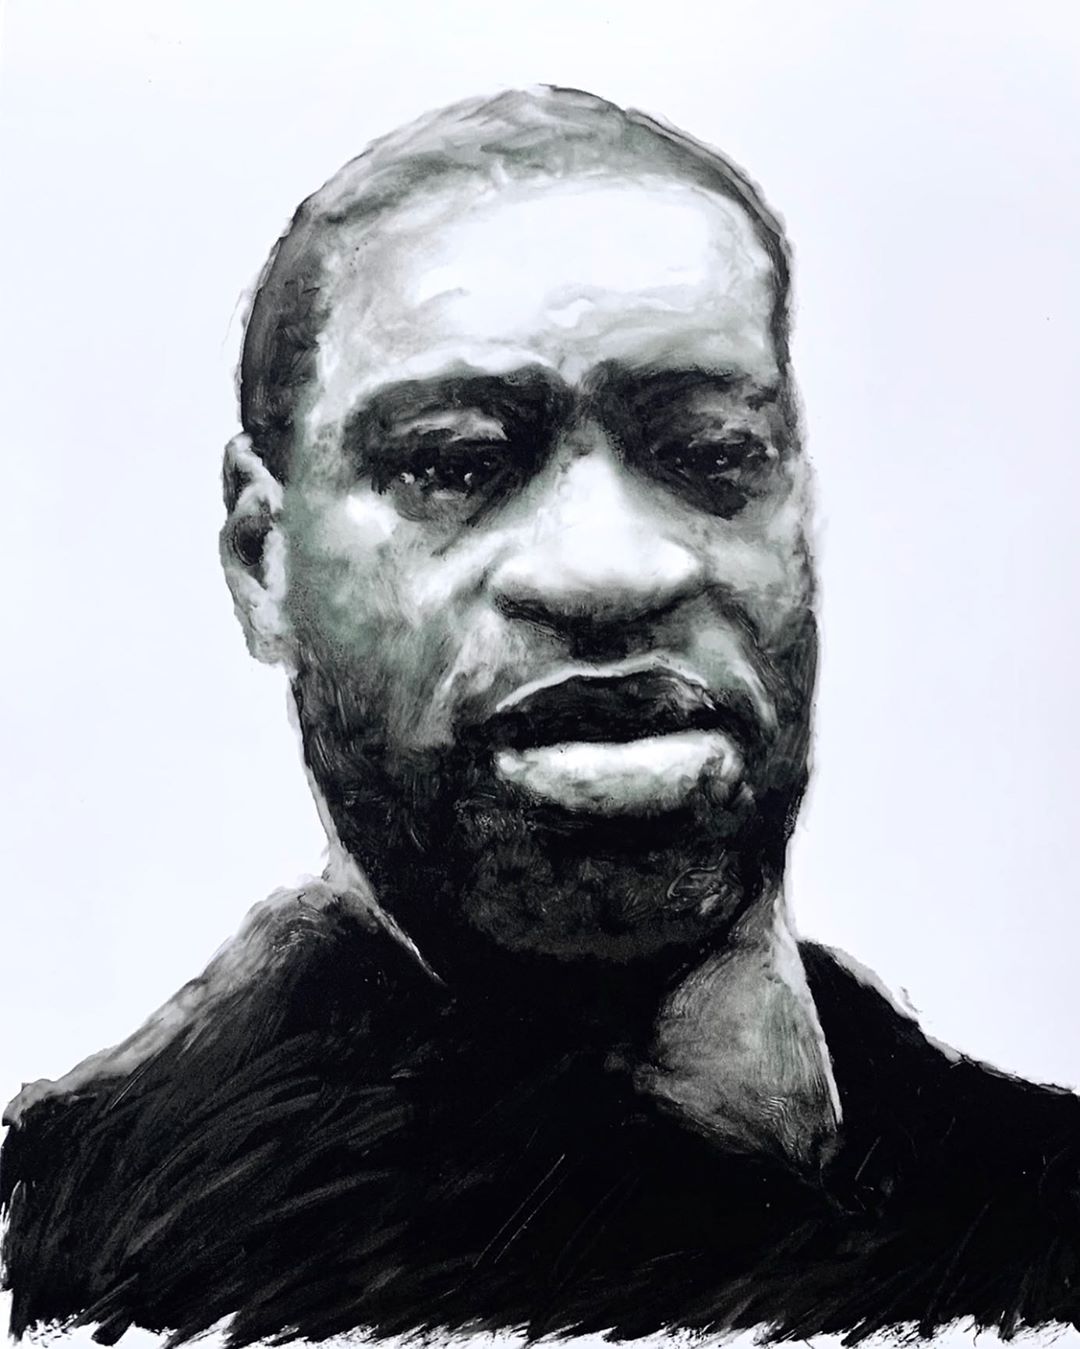 John Ratajkowksi's portrait of George Floyd